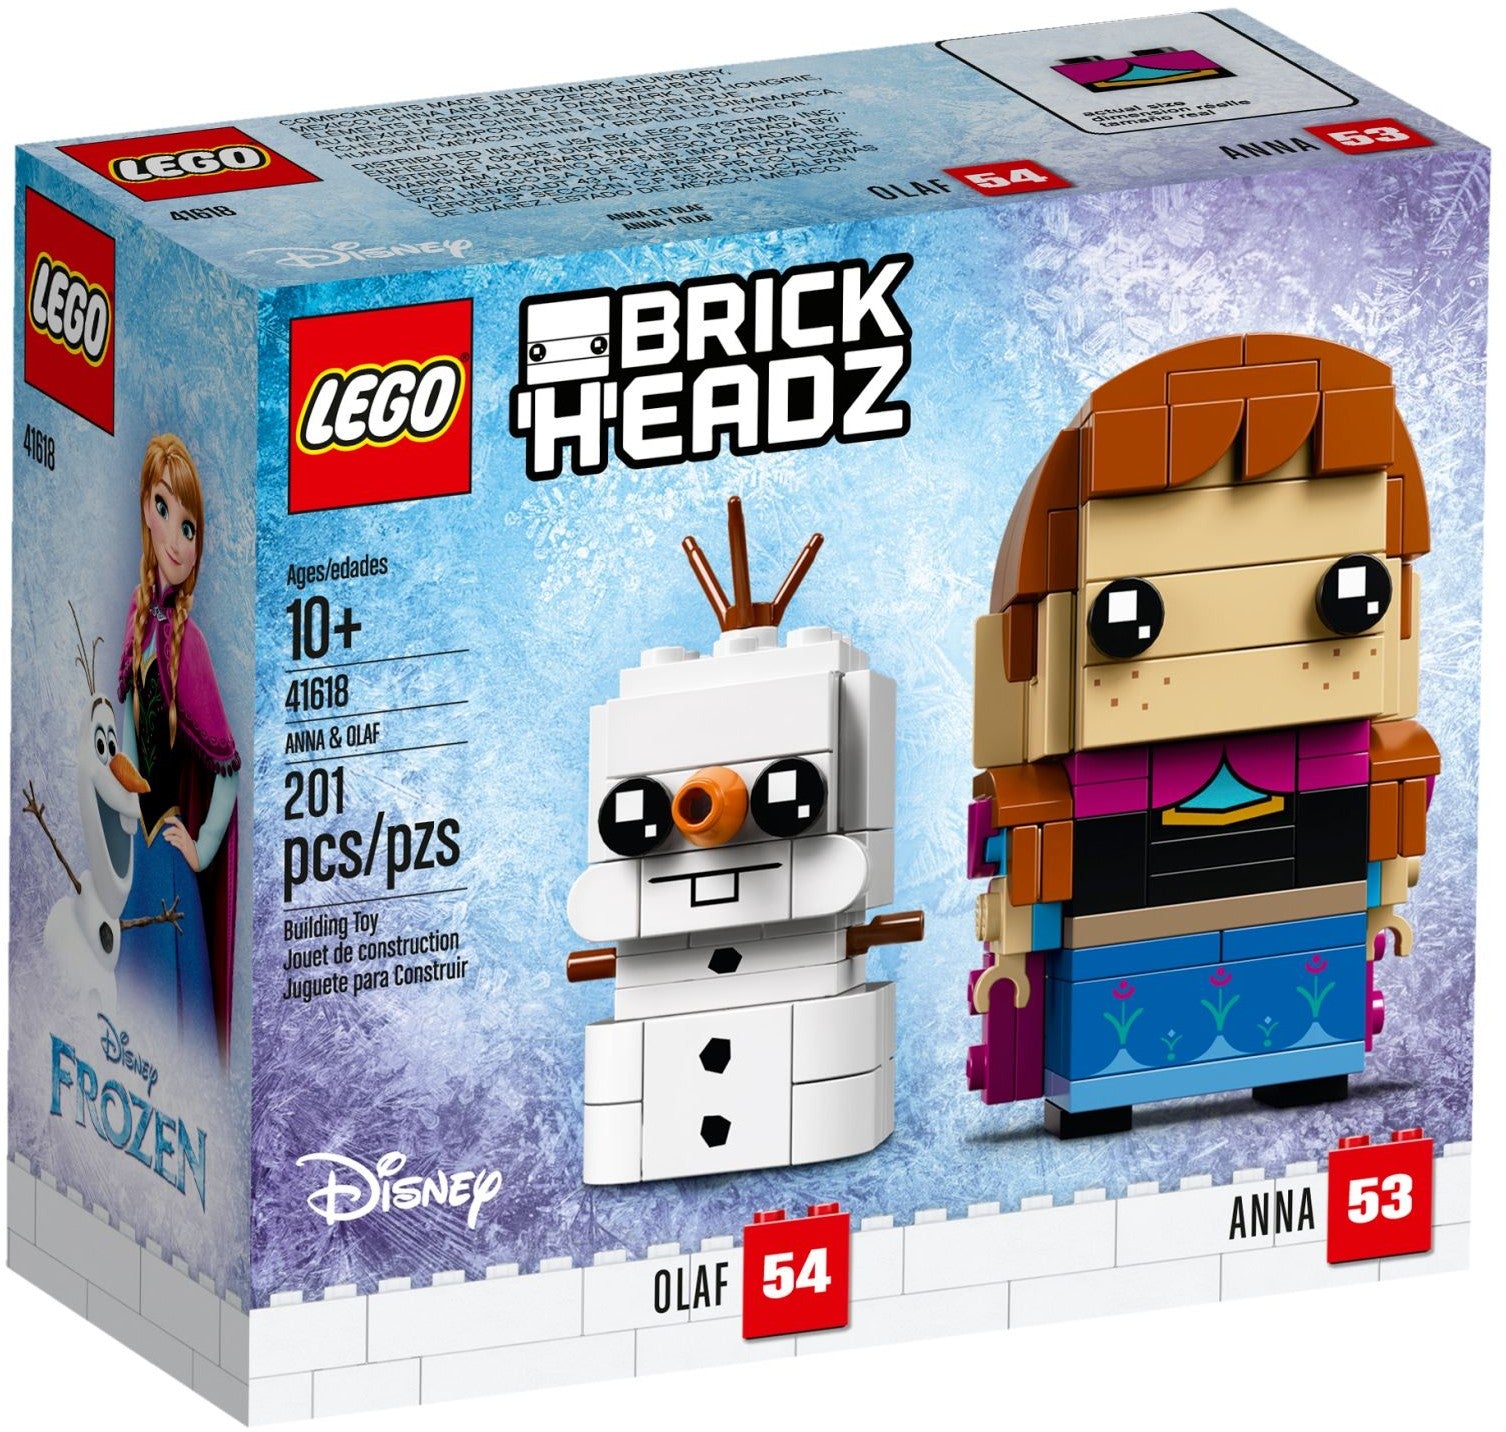 Lego Brickheadz 41618 - Anna & Olaf